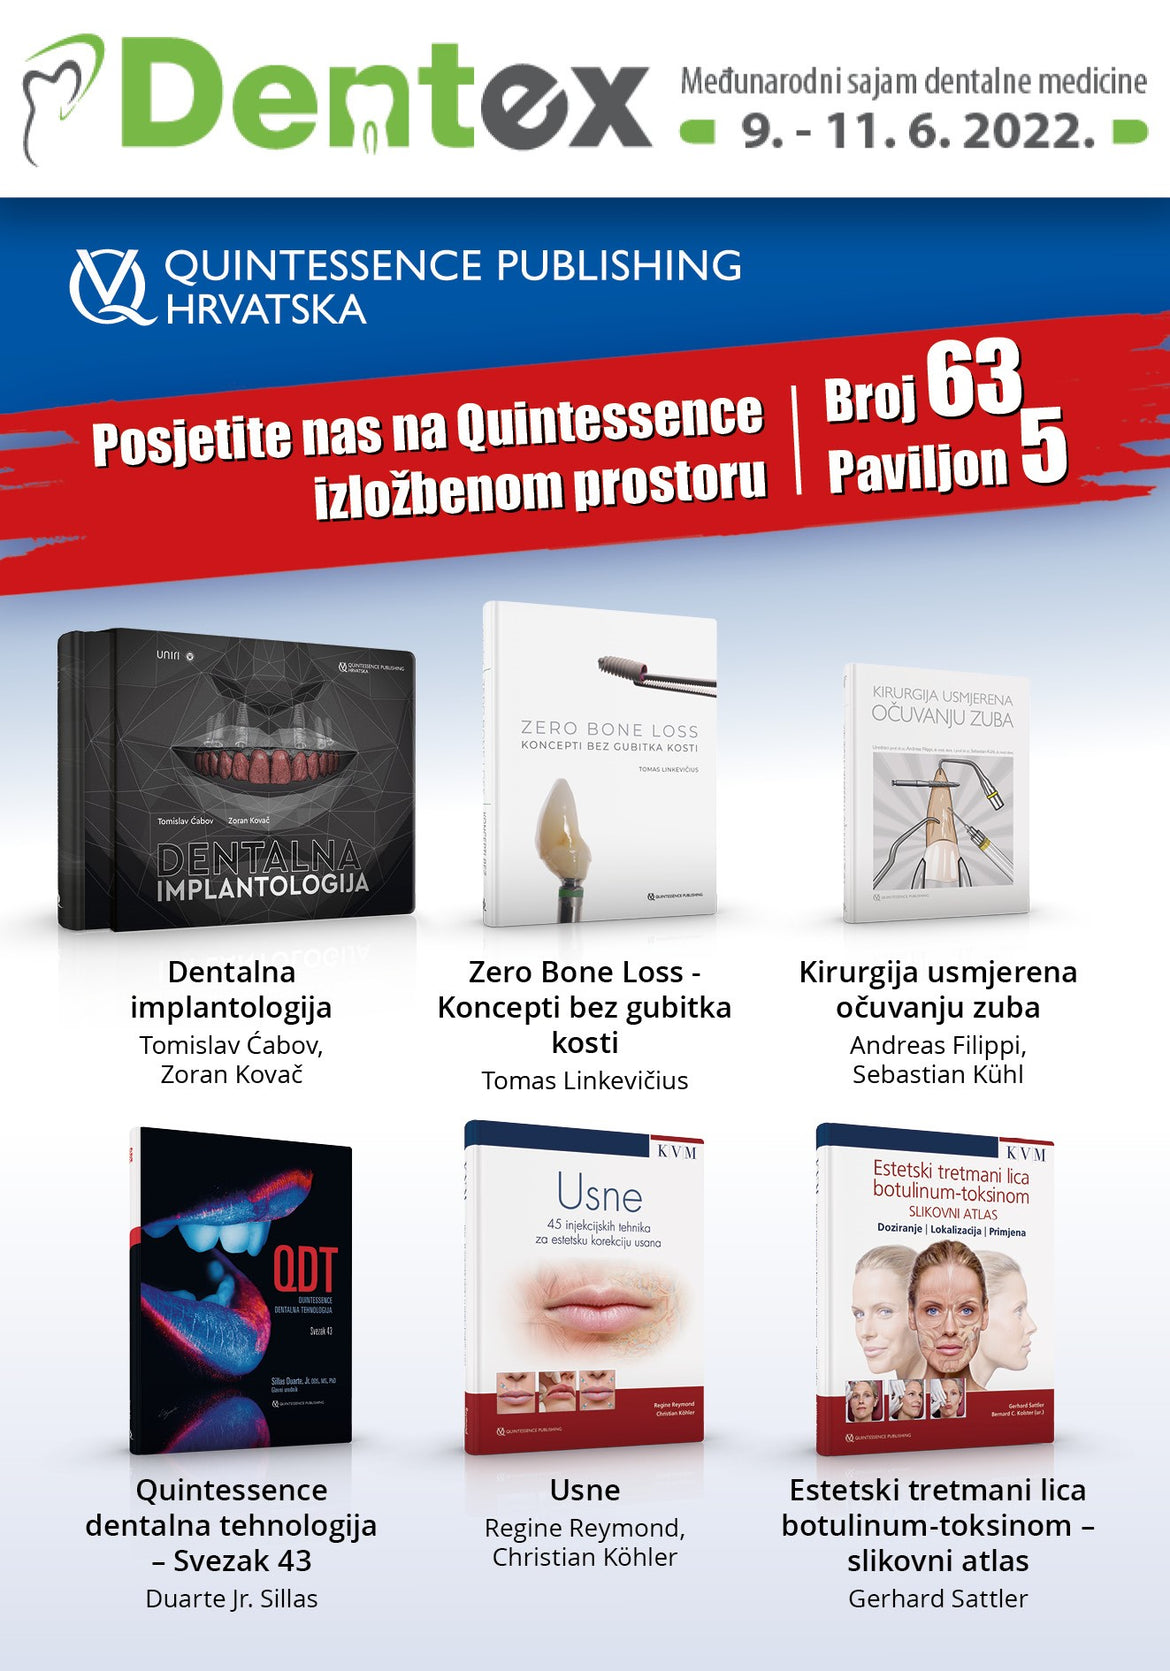 Quintessence literatura na međunarodnom sajmu dentalne medicine Dentex - Paviljon 5, štand broj 63.